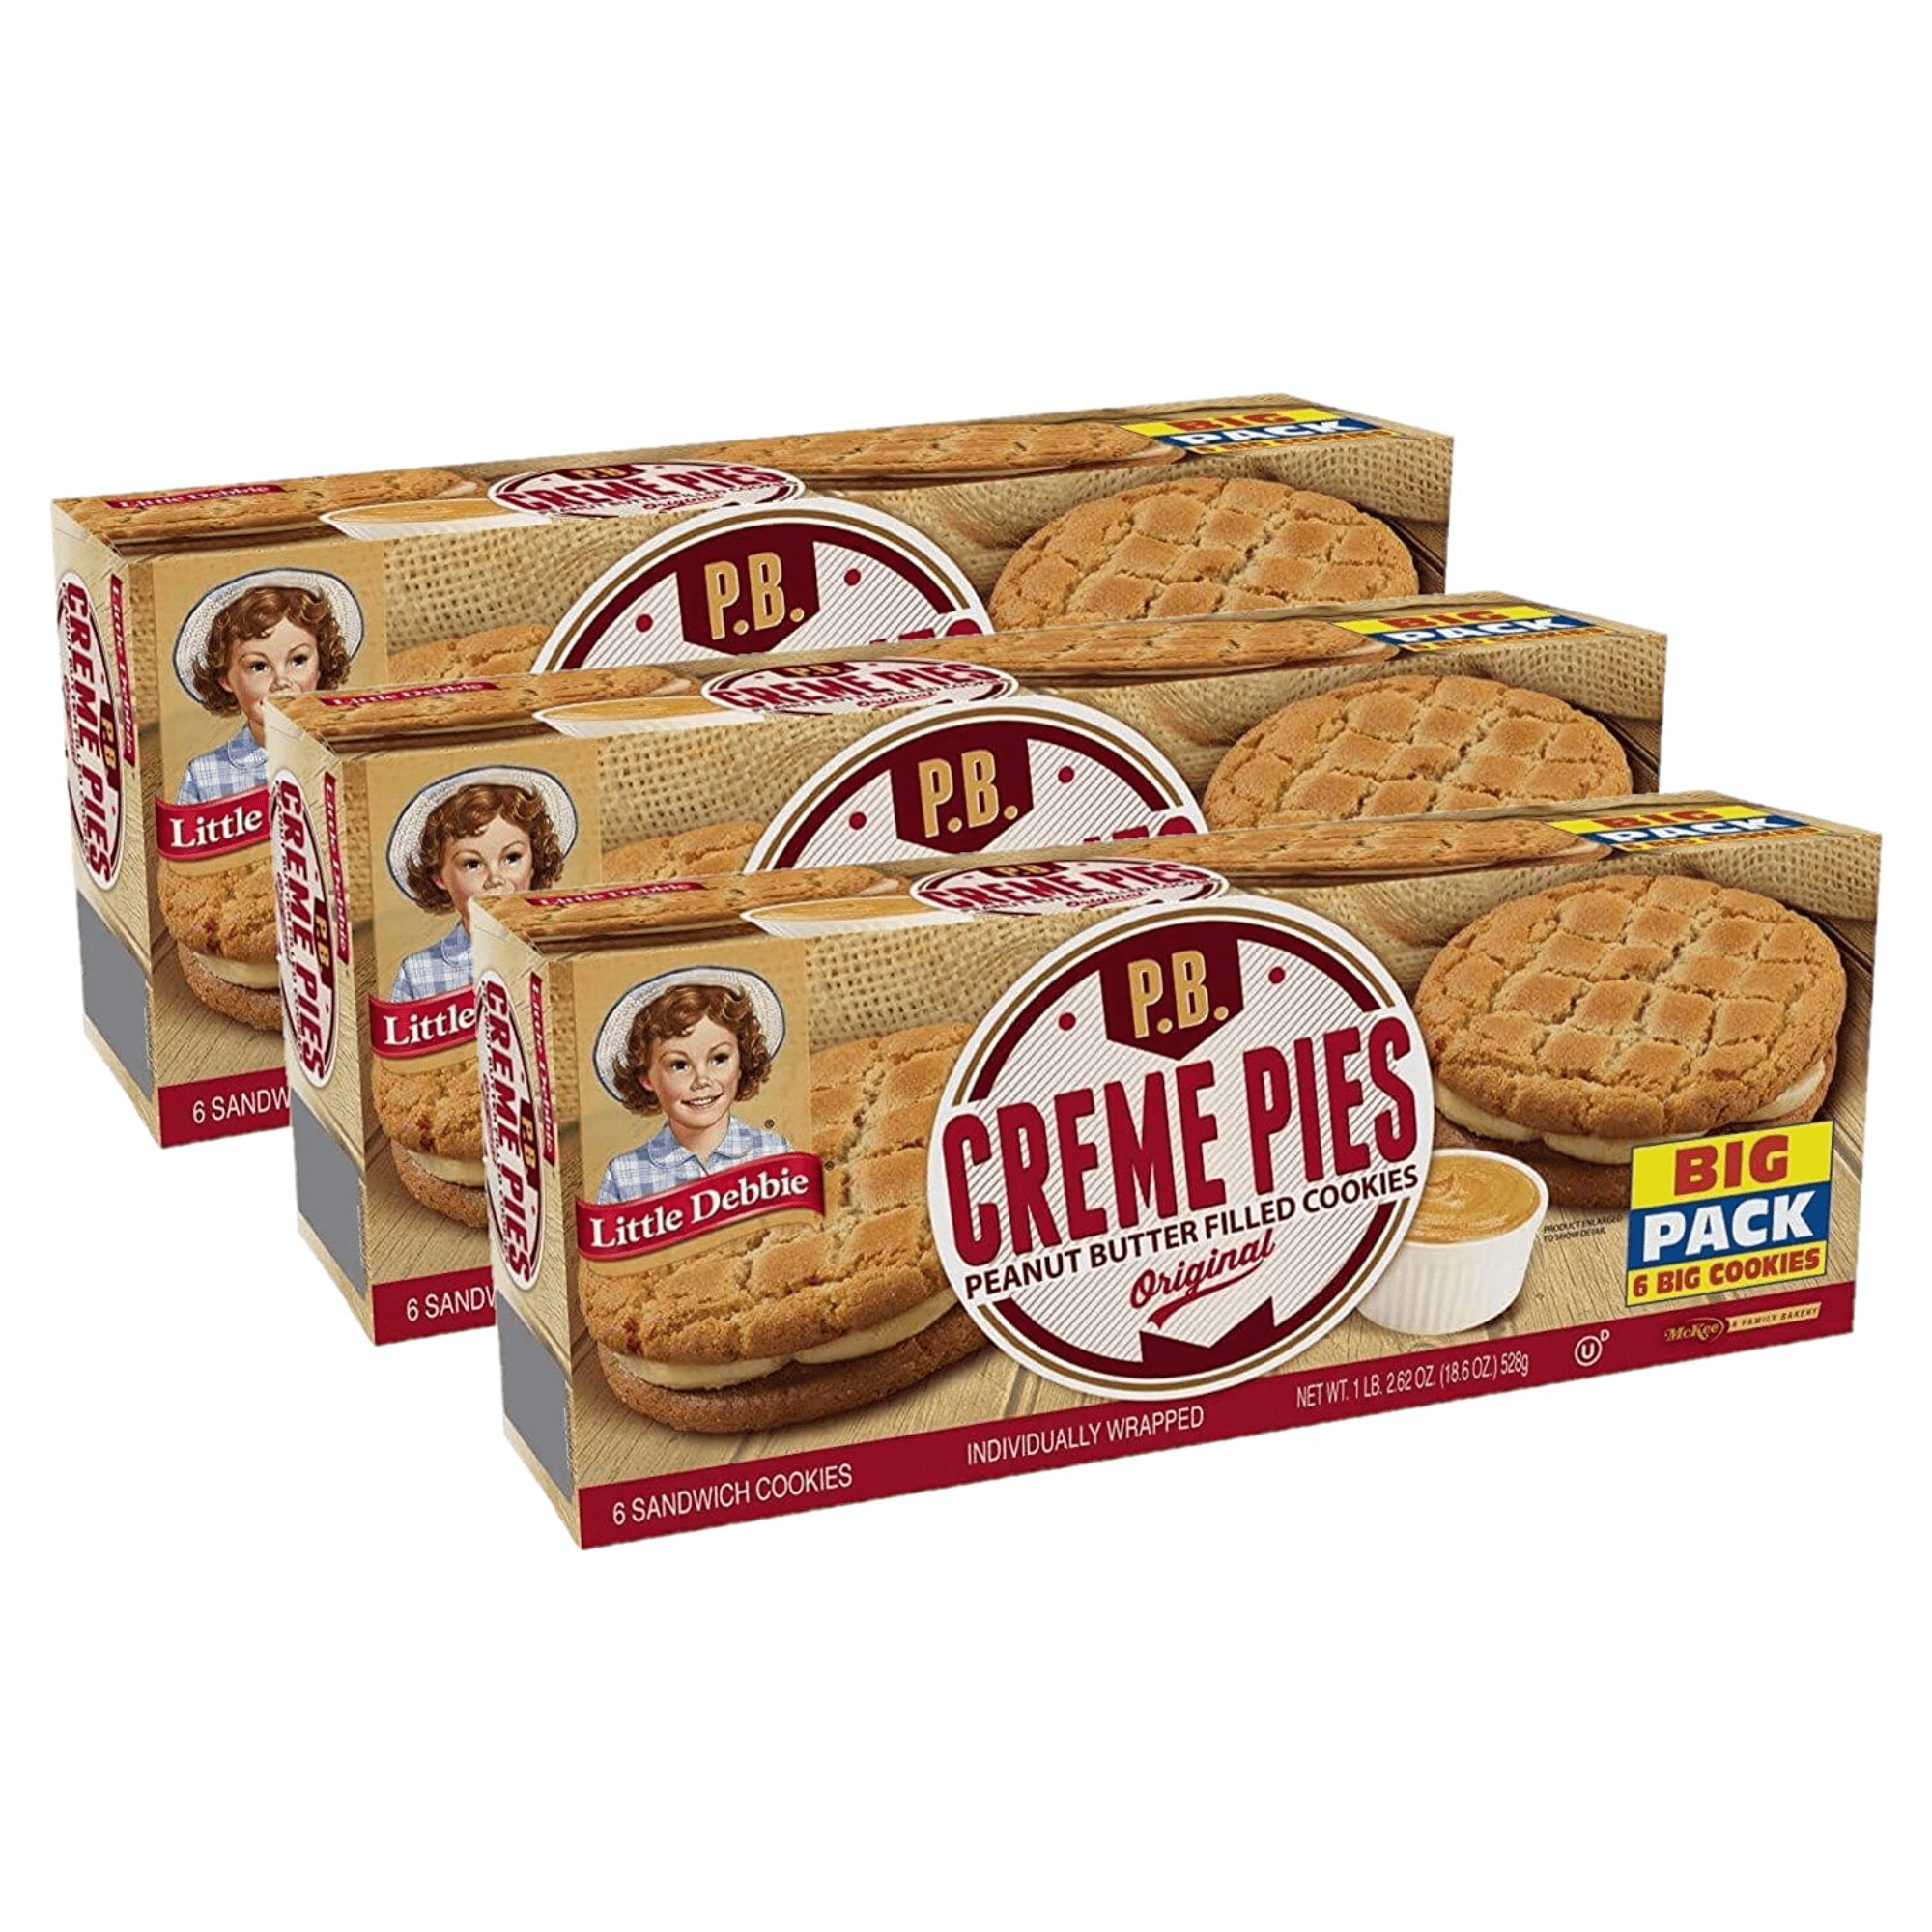 Little Debbie Peanut Butter Creme Pies, 3 Big Pack Boxes